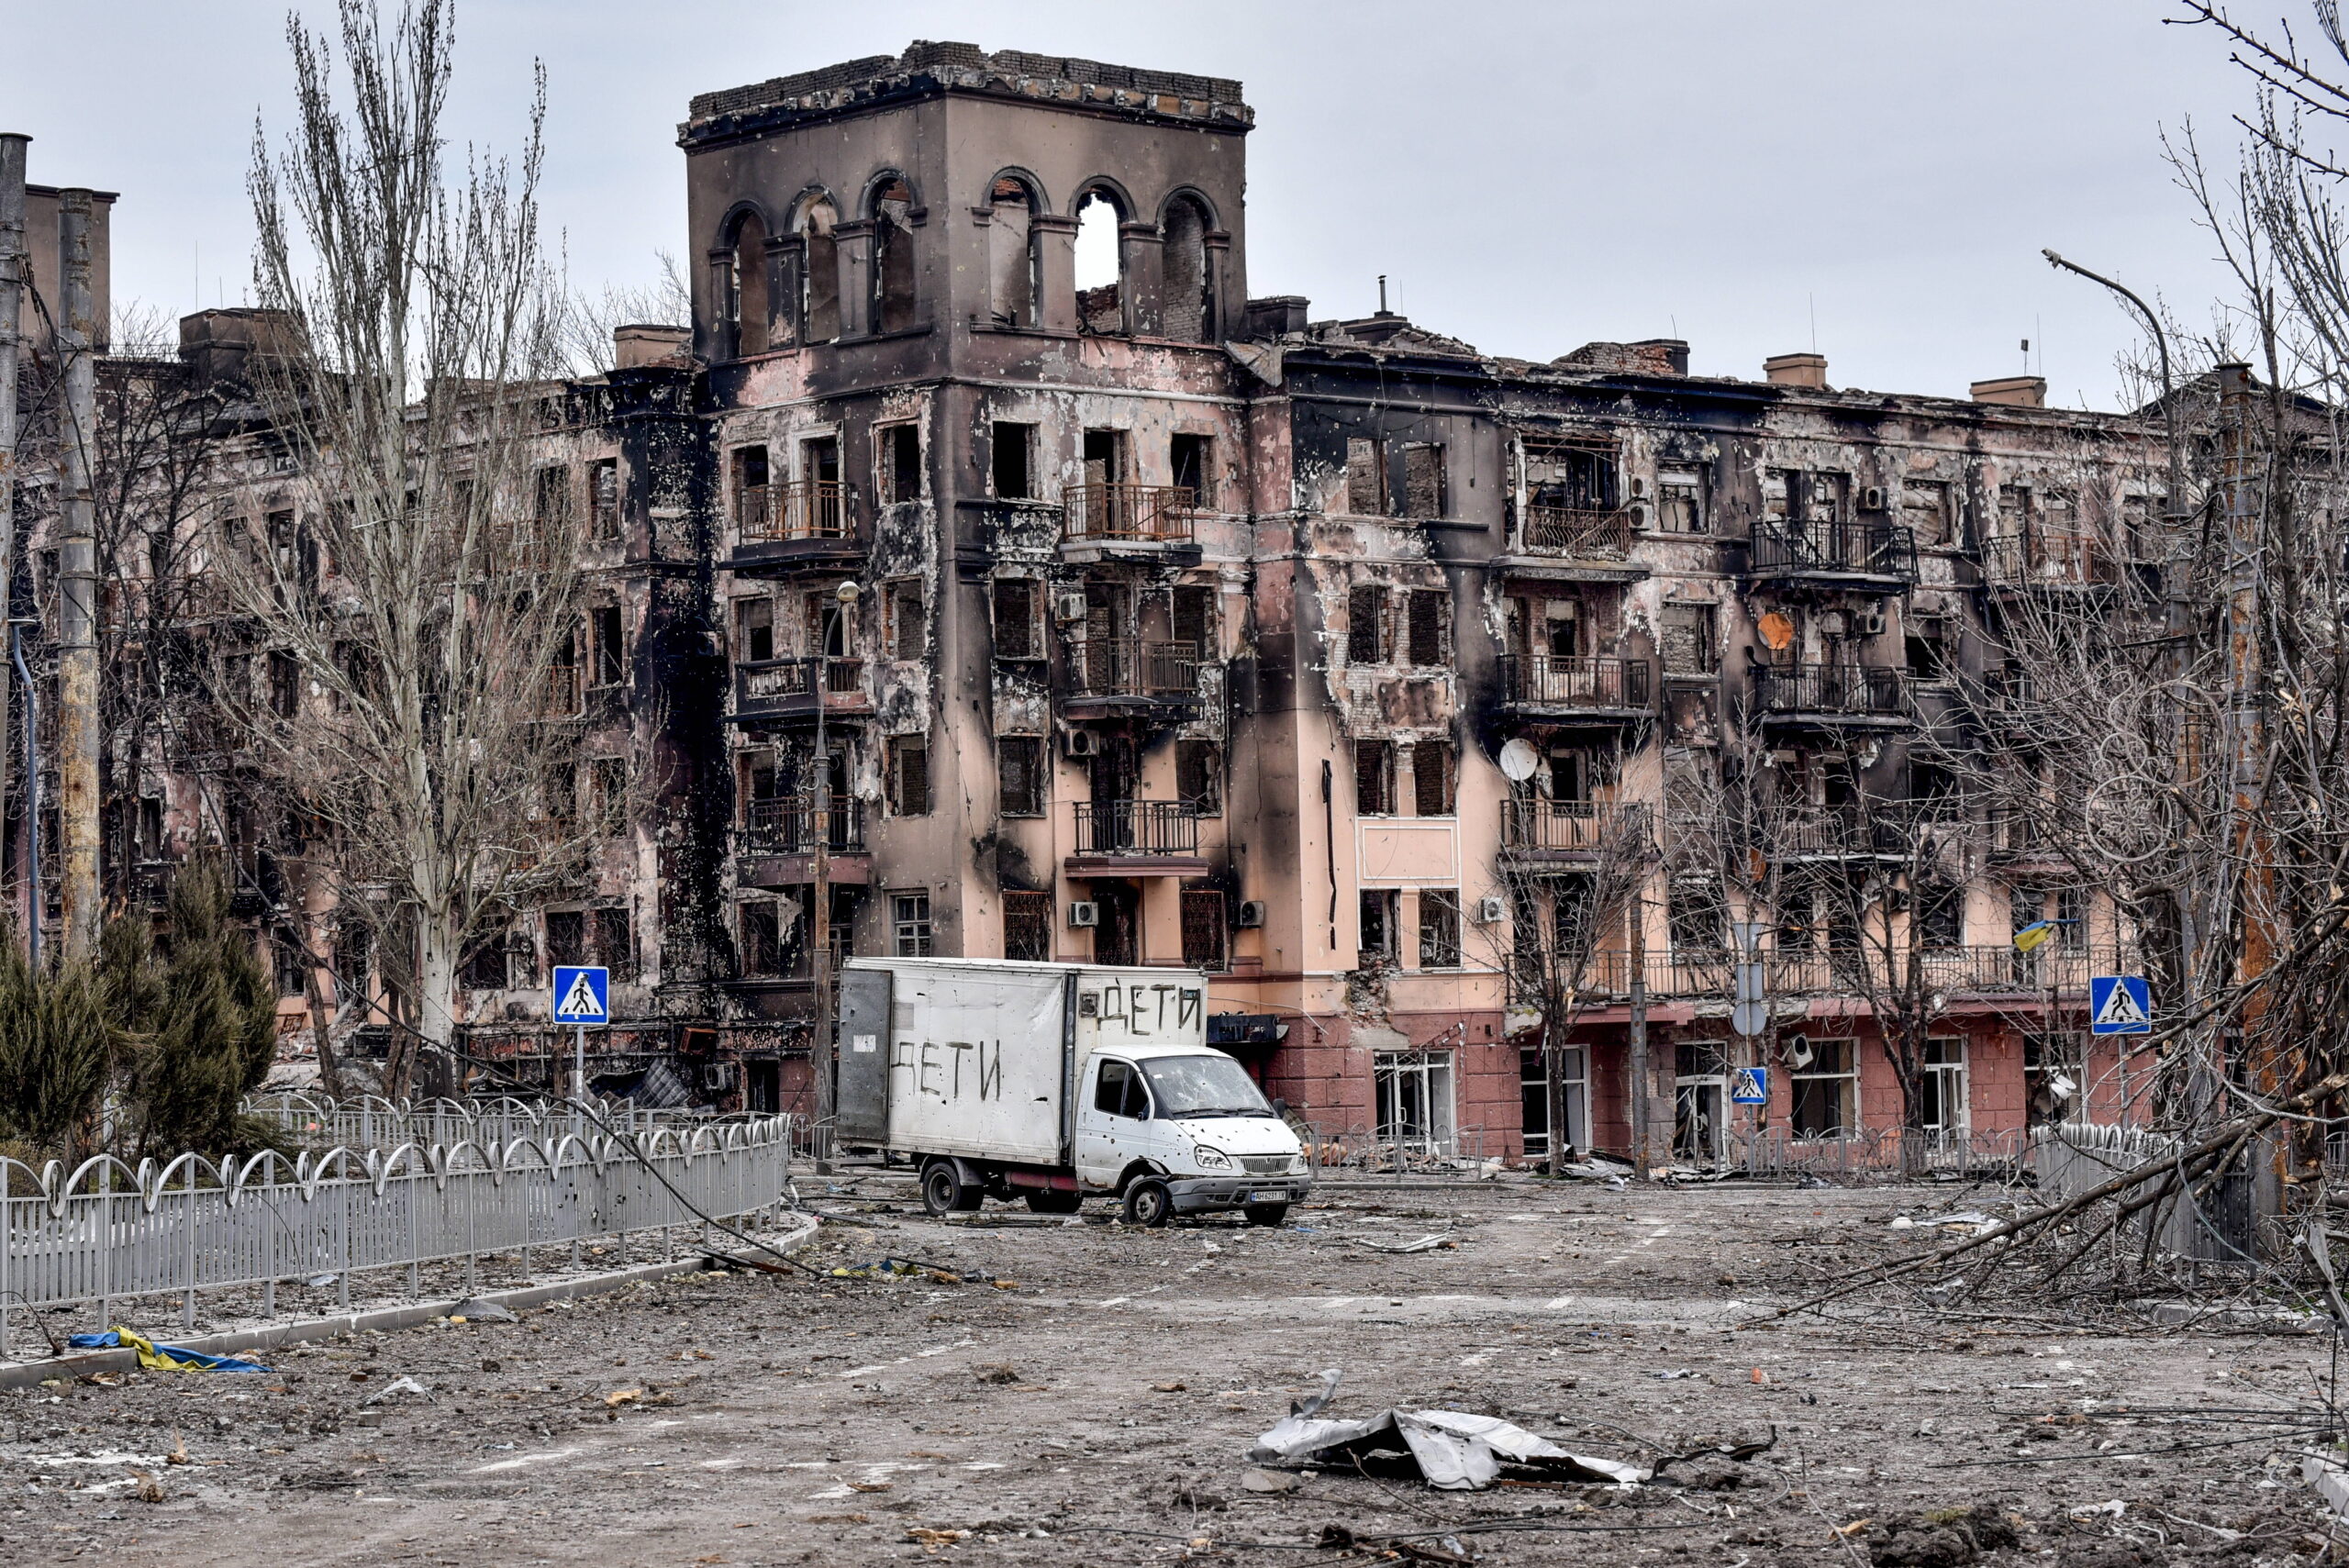 Bilder aus Mariupol könnten einen grausigen Vorgeschmack geben auf das, was der gesamten Ostukraine in den nächsten Tagen bevorsteht.